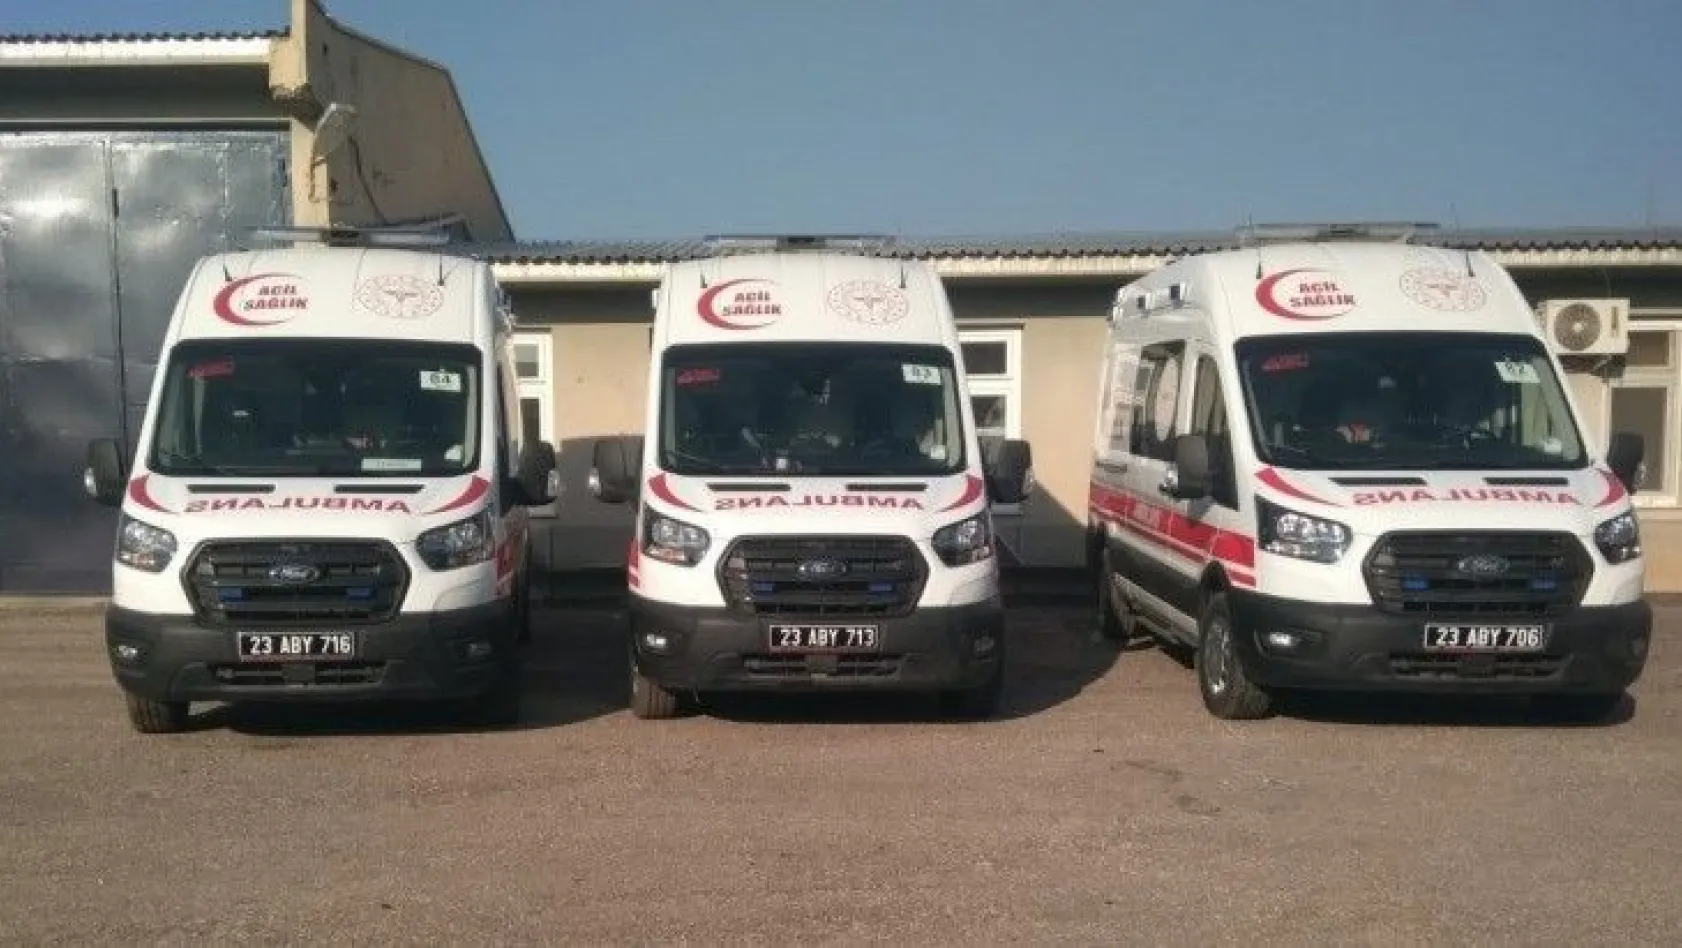 4 yeni ambulans hizmete girdi